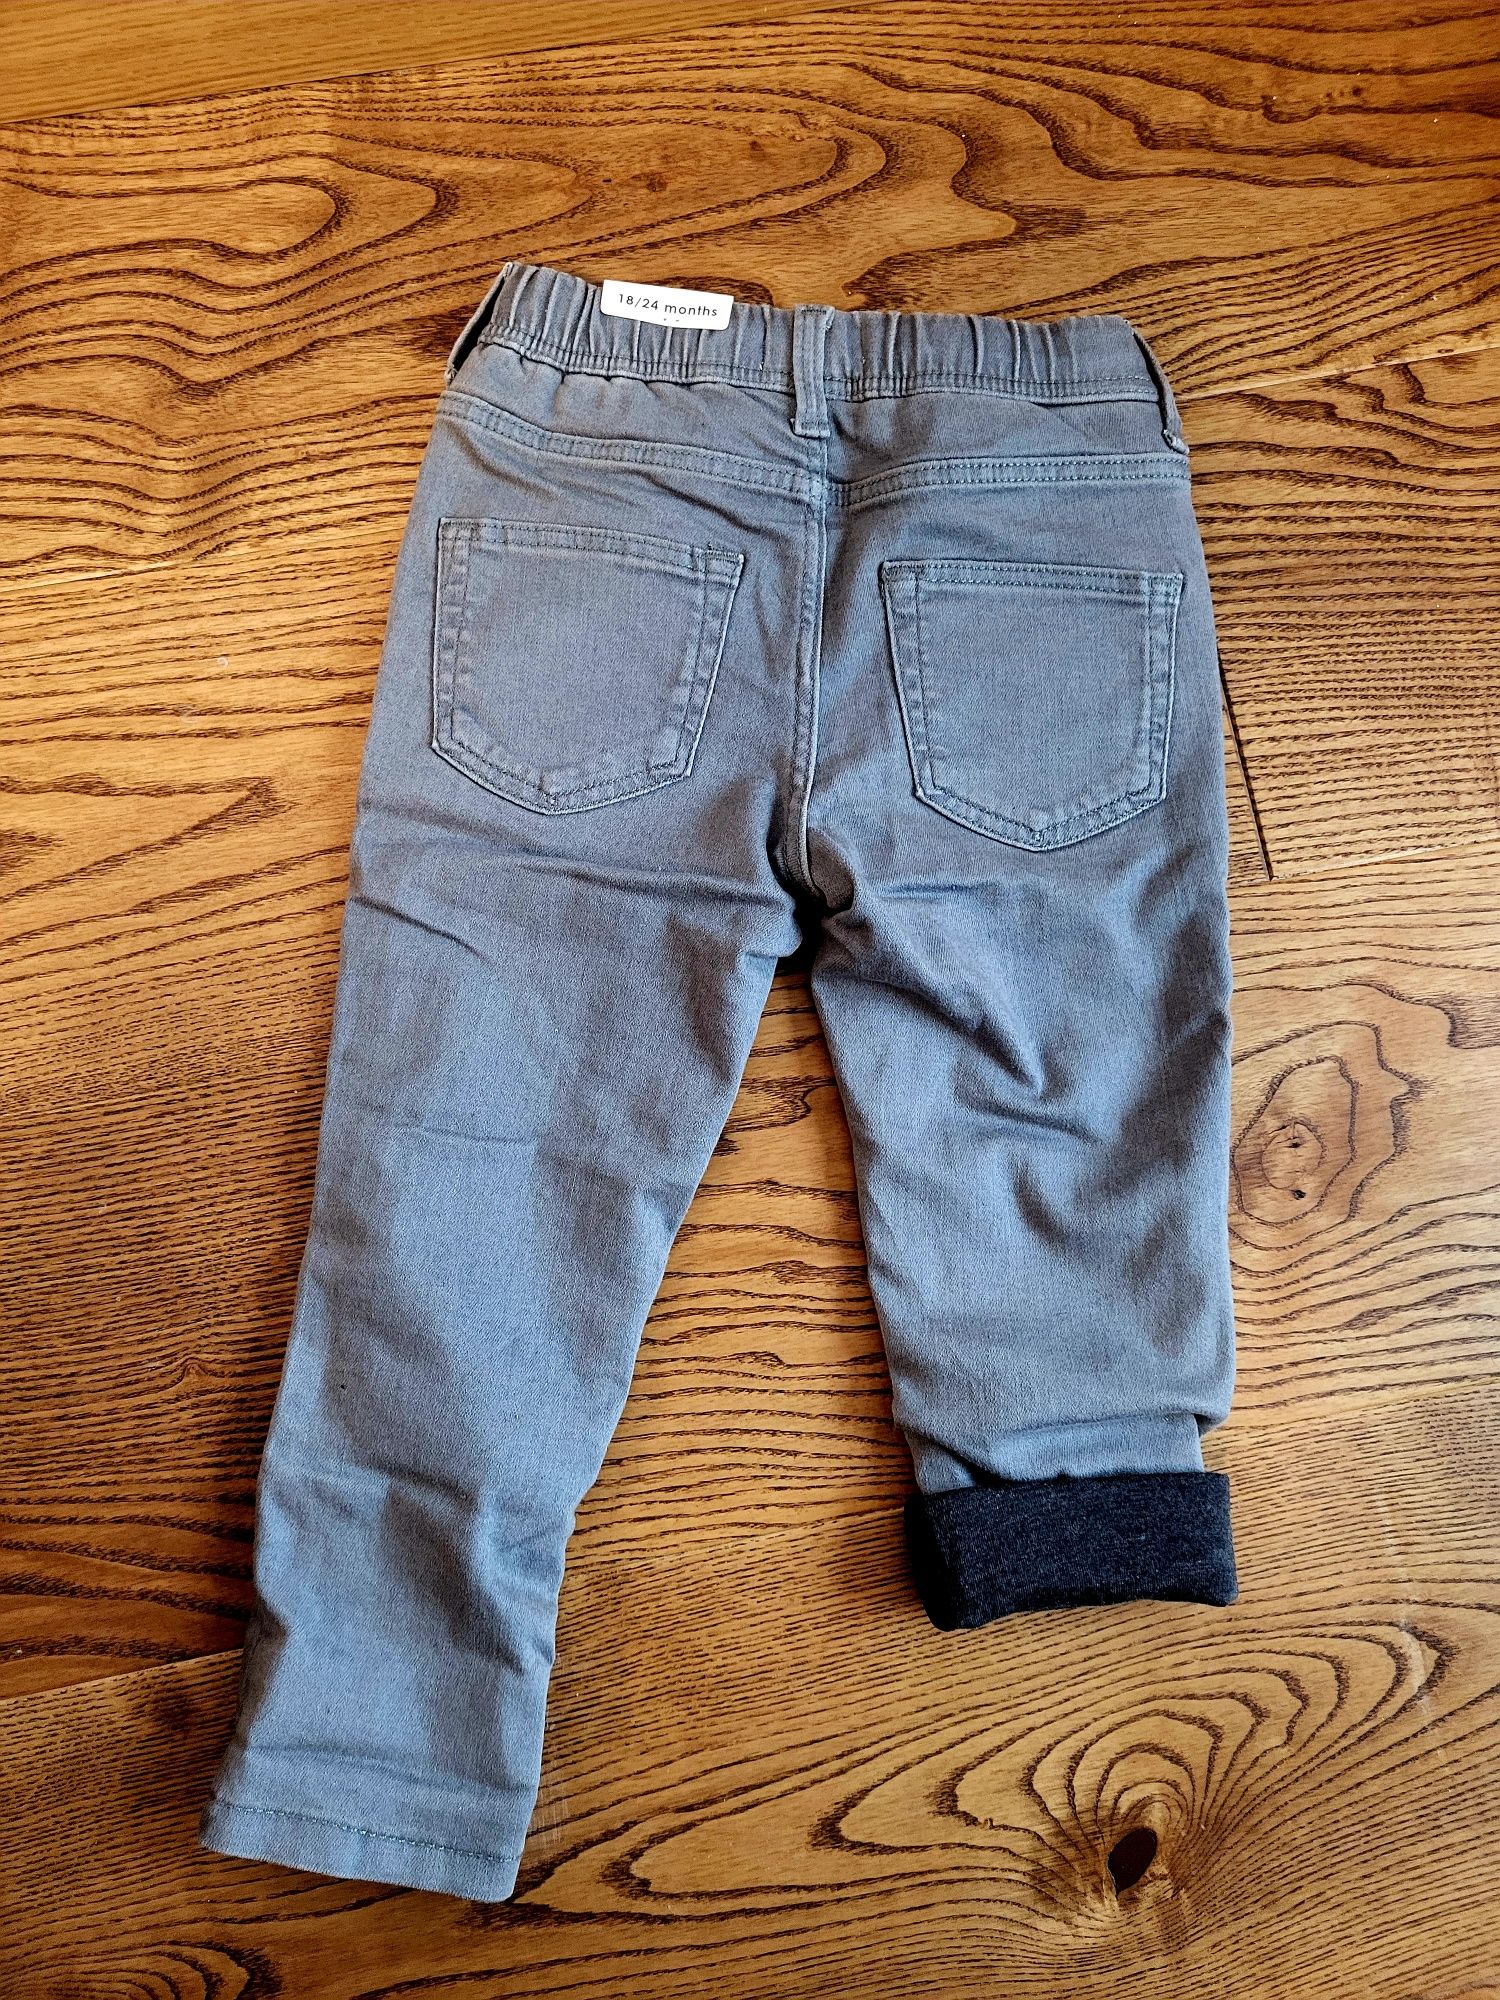 Spodnie Mango NOWE dziecięce, r. 92, jeansy bawełniana podszewka